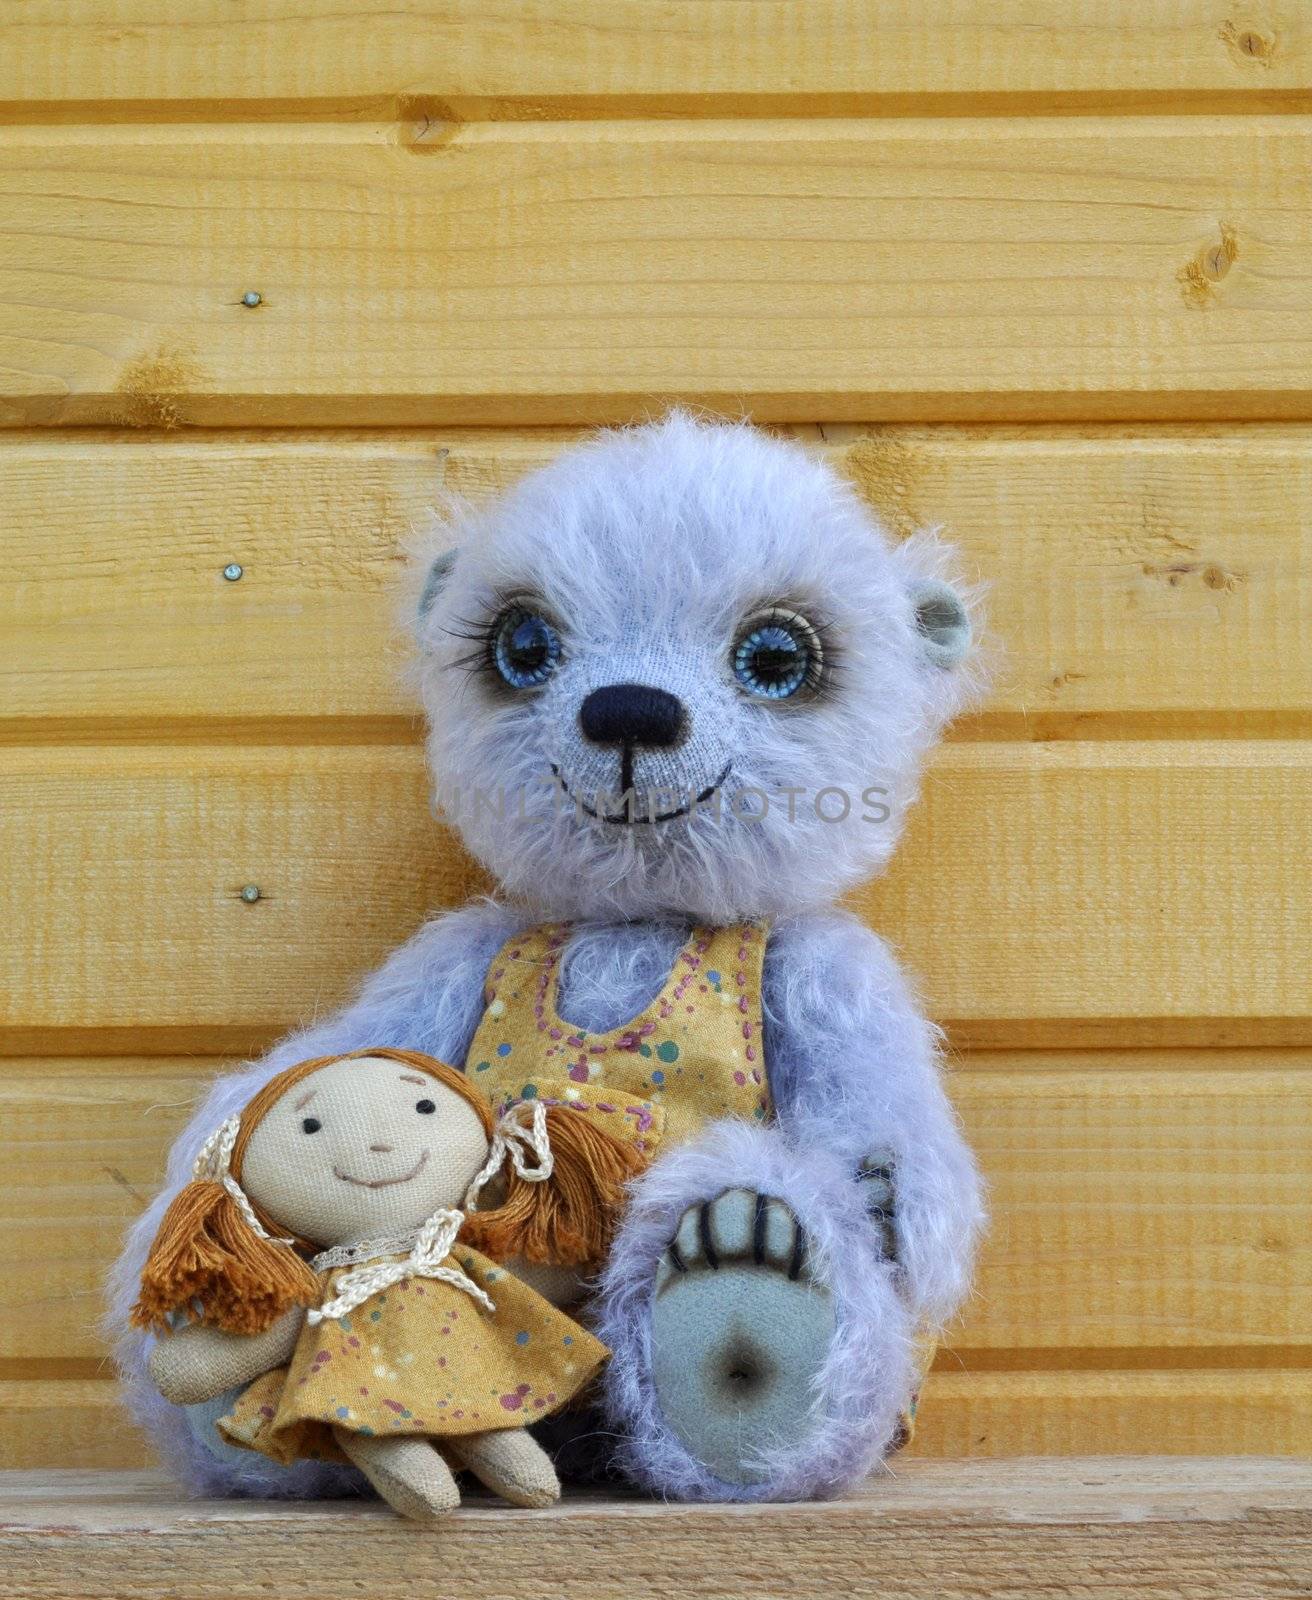 Teddy bear Chupa with girlfriend. Handmade, the sewed toy